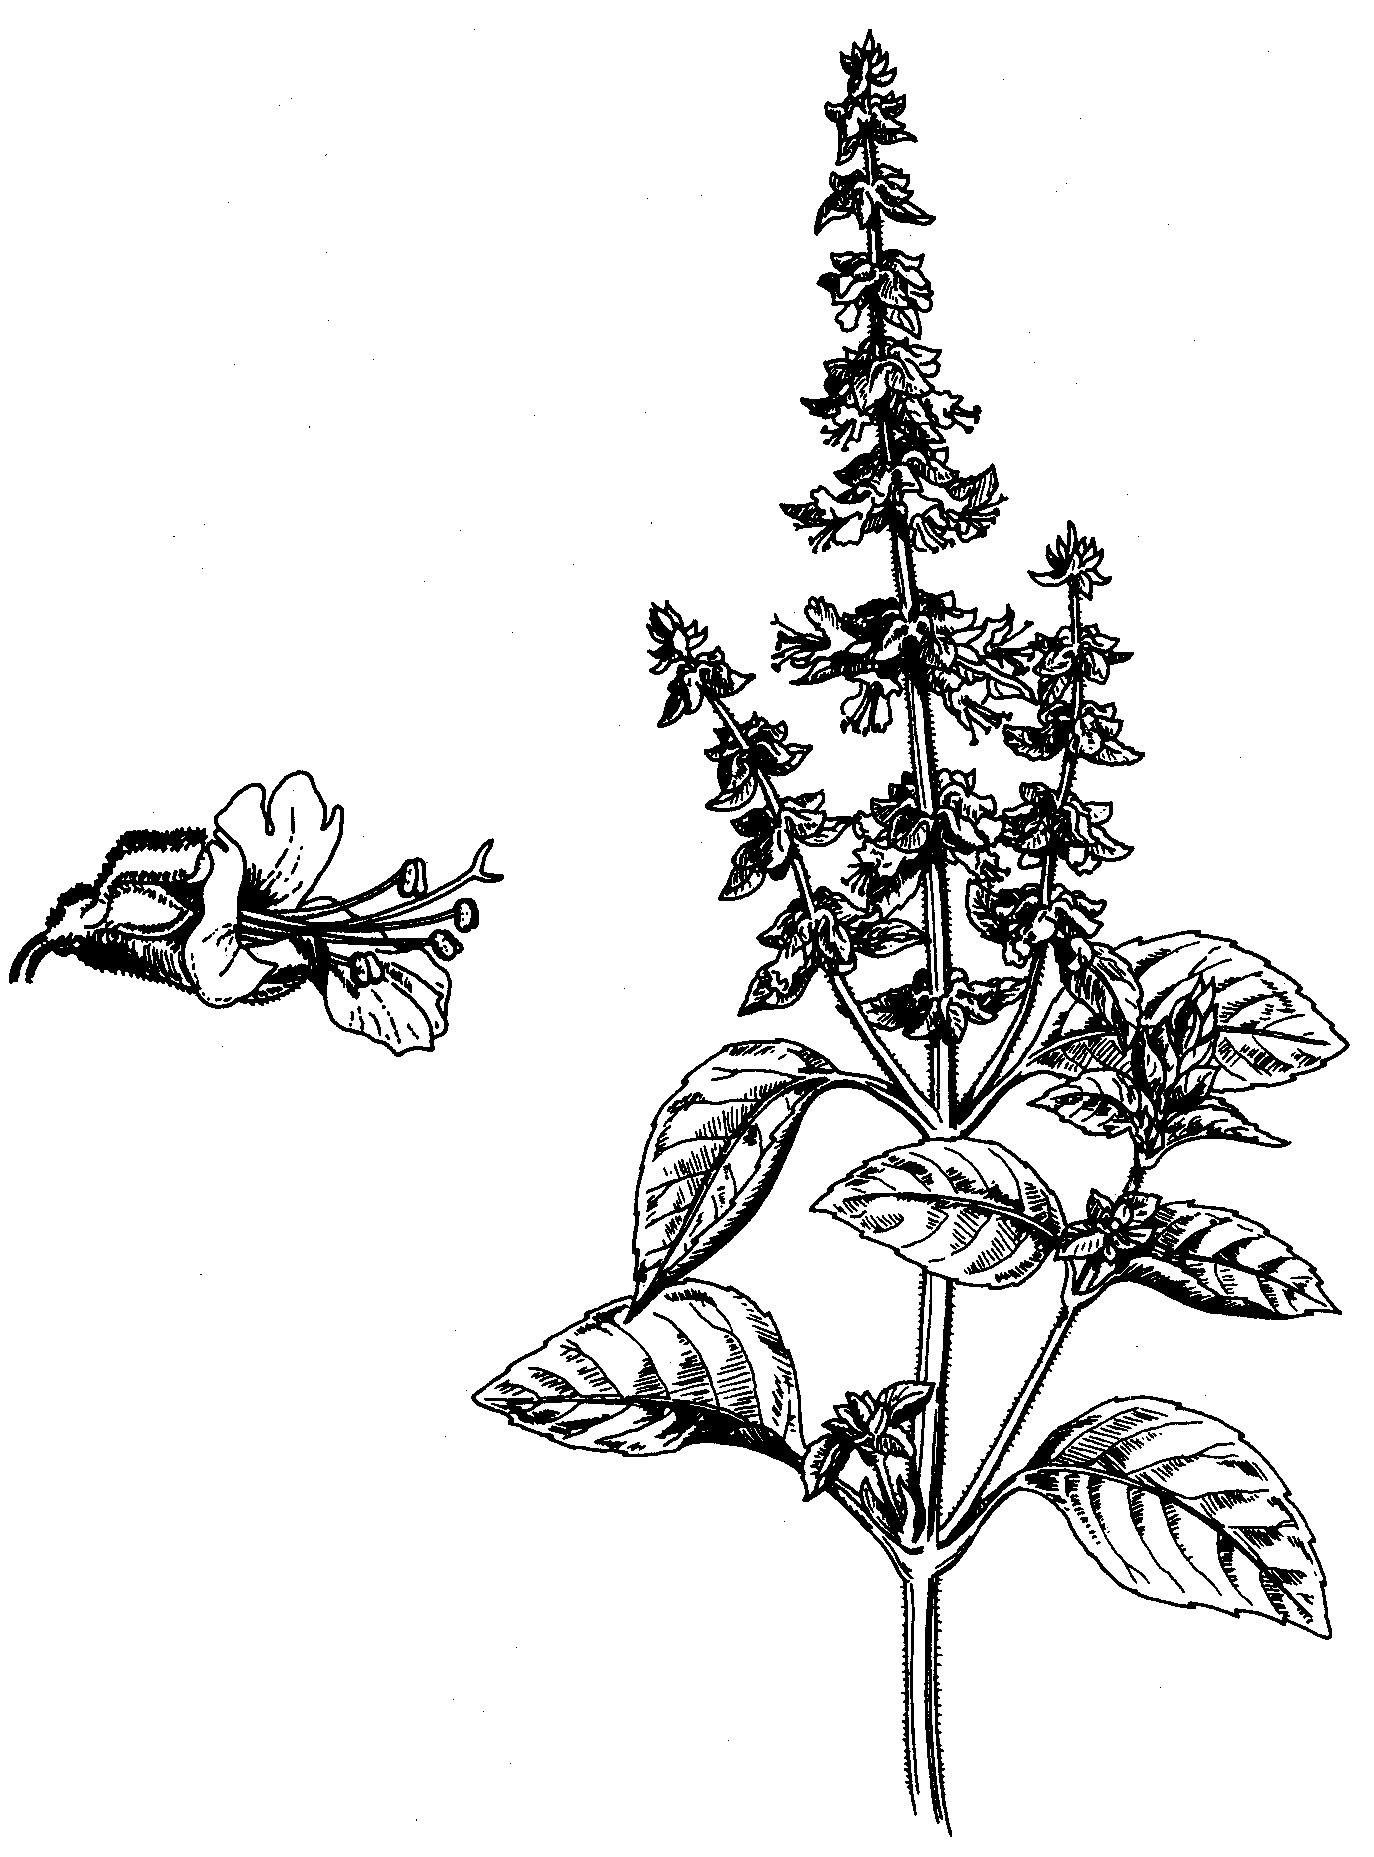 Basilicum officinalis